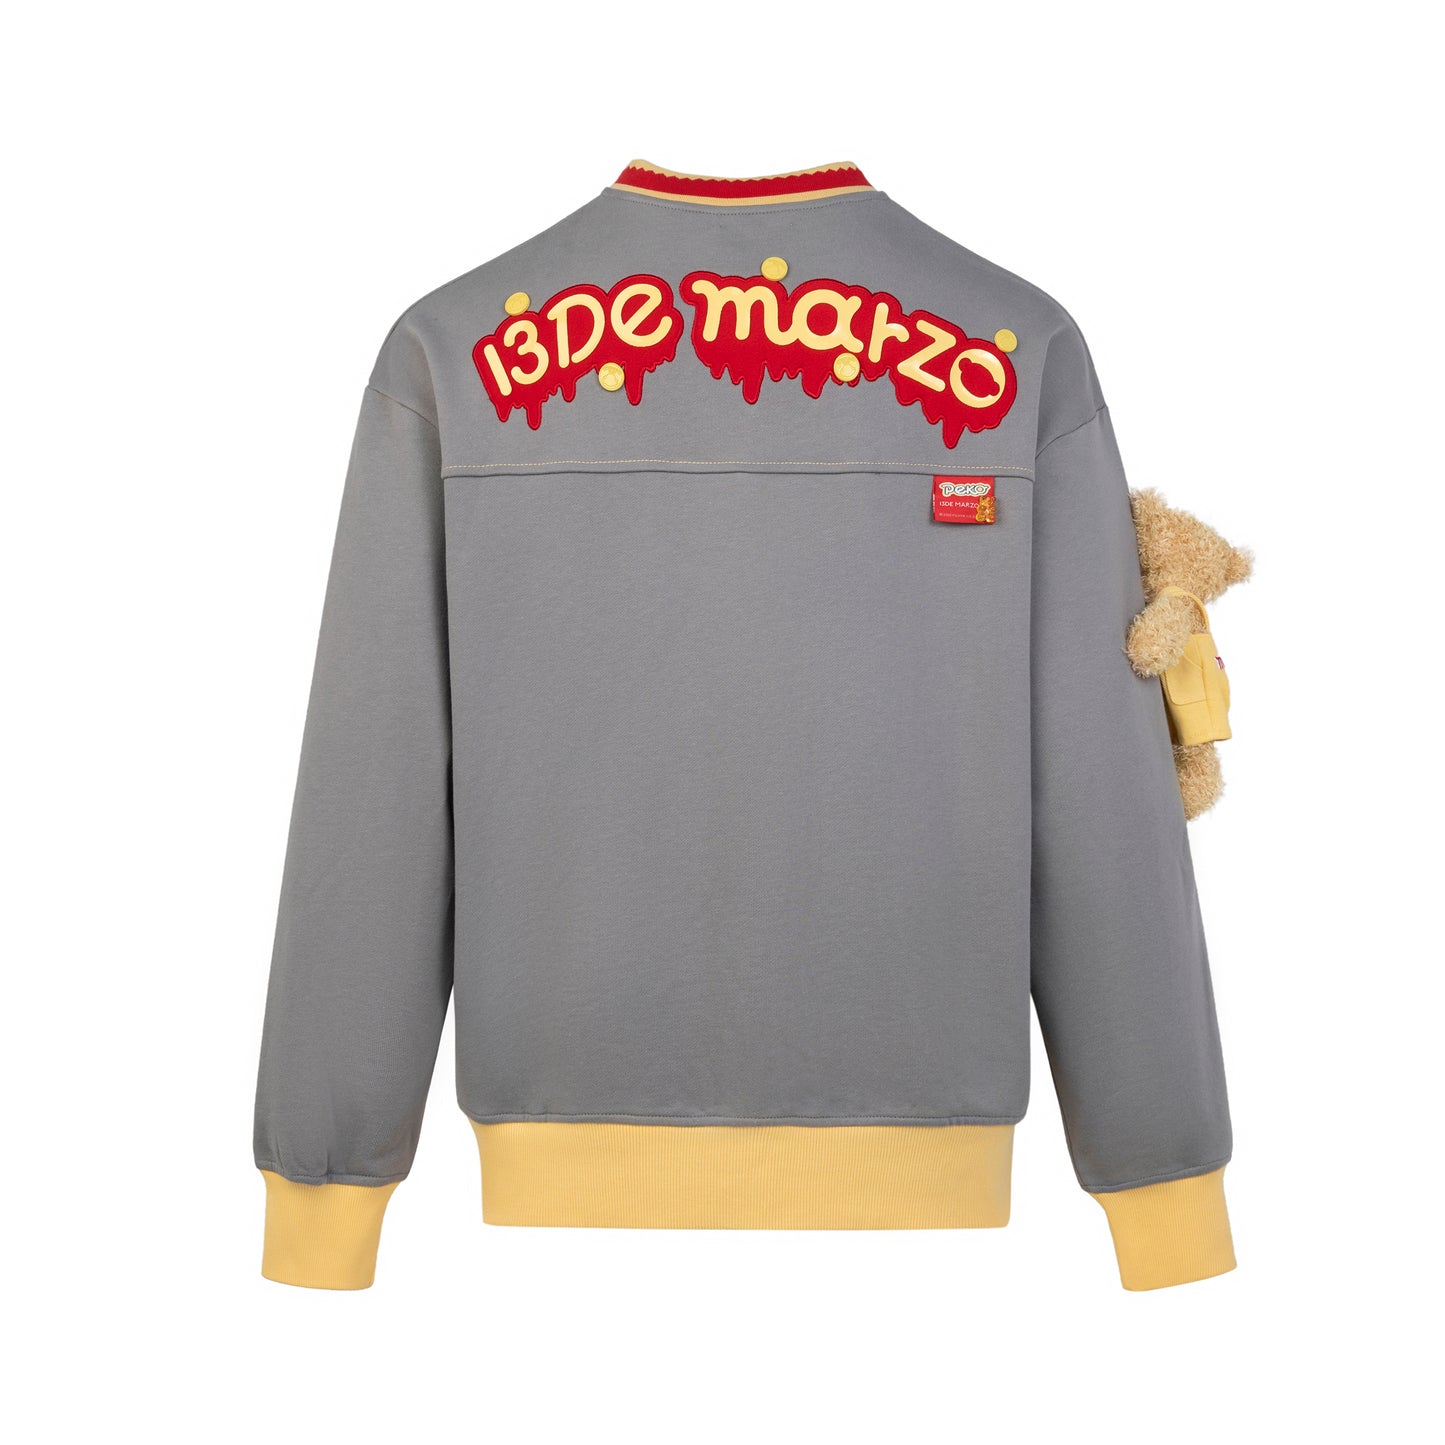 13DE MARZO Peko Sweets Bear Sweater